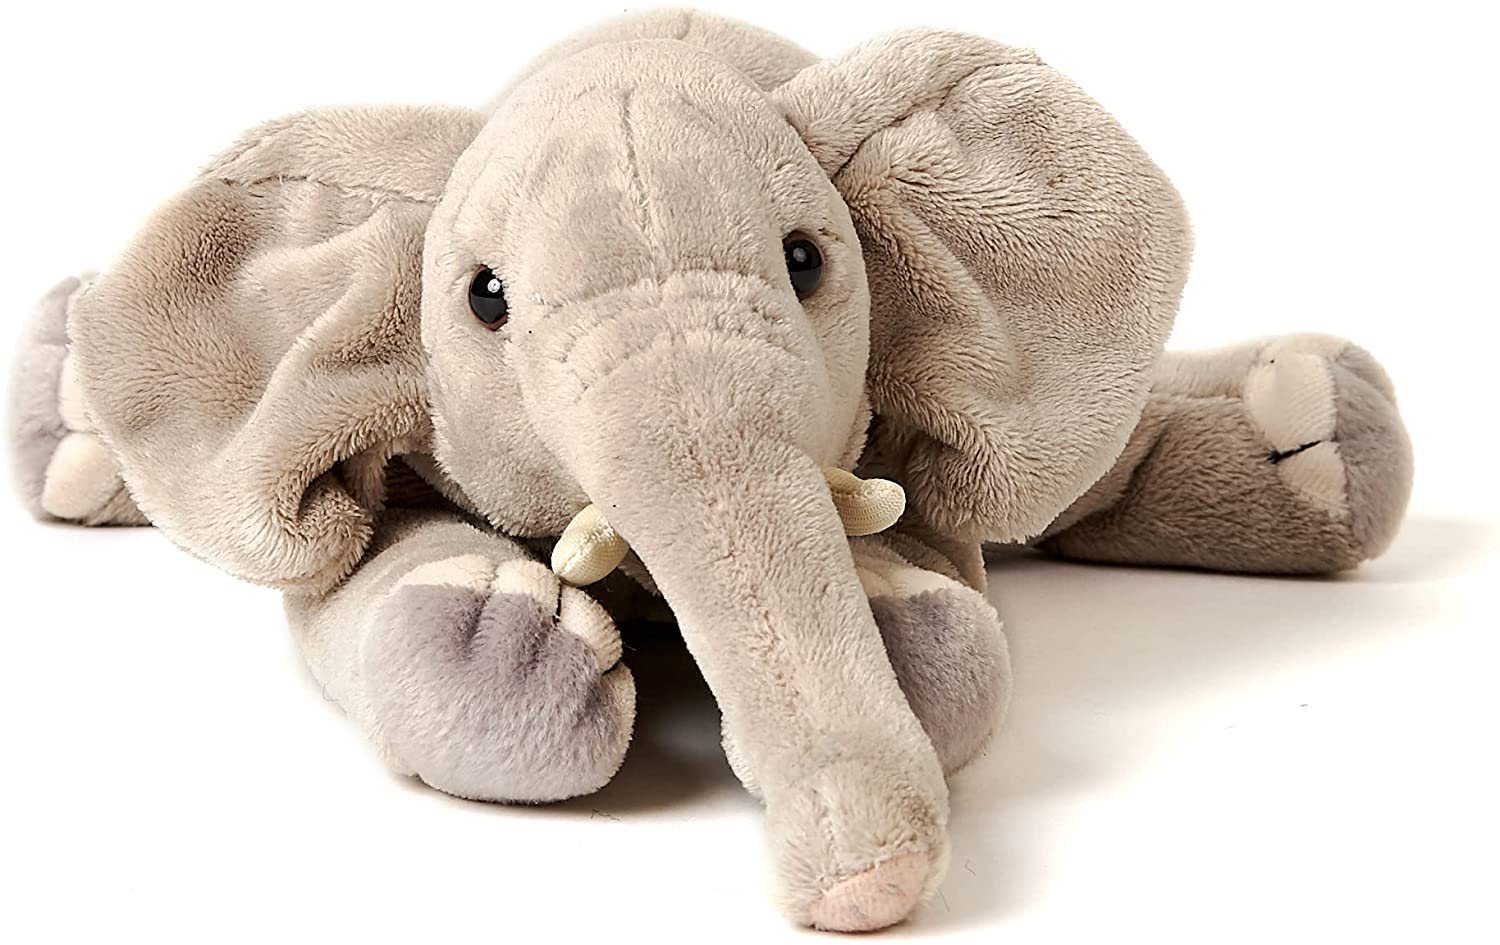 Uni-Toys - Elephant, Lying - 27 cm (length) - Plush Elephant - Soft Toy, Cuddly Toy